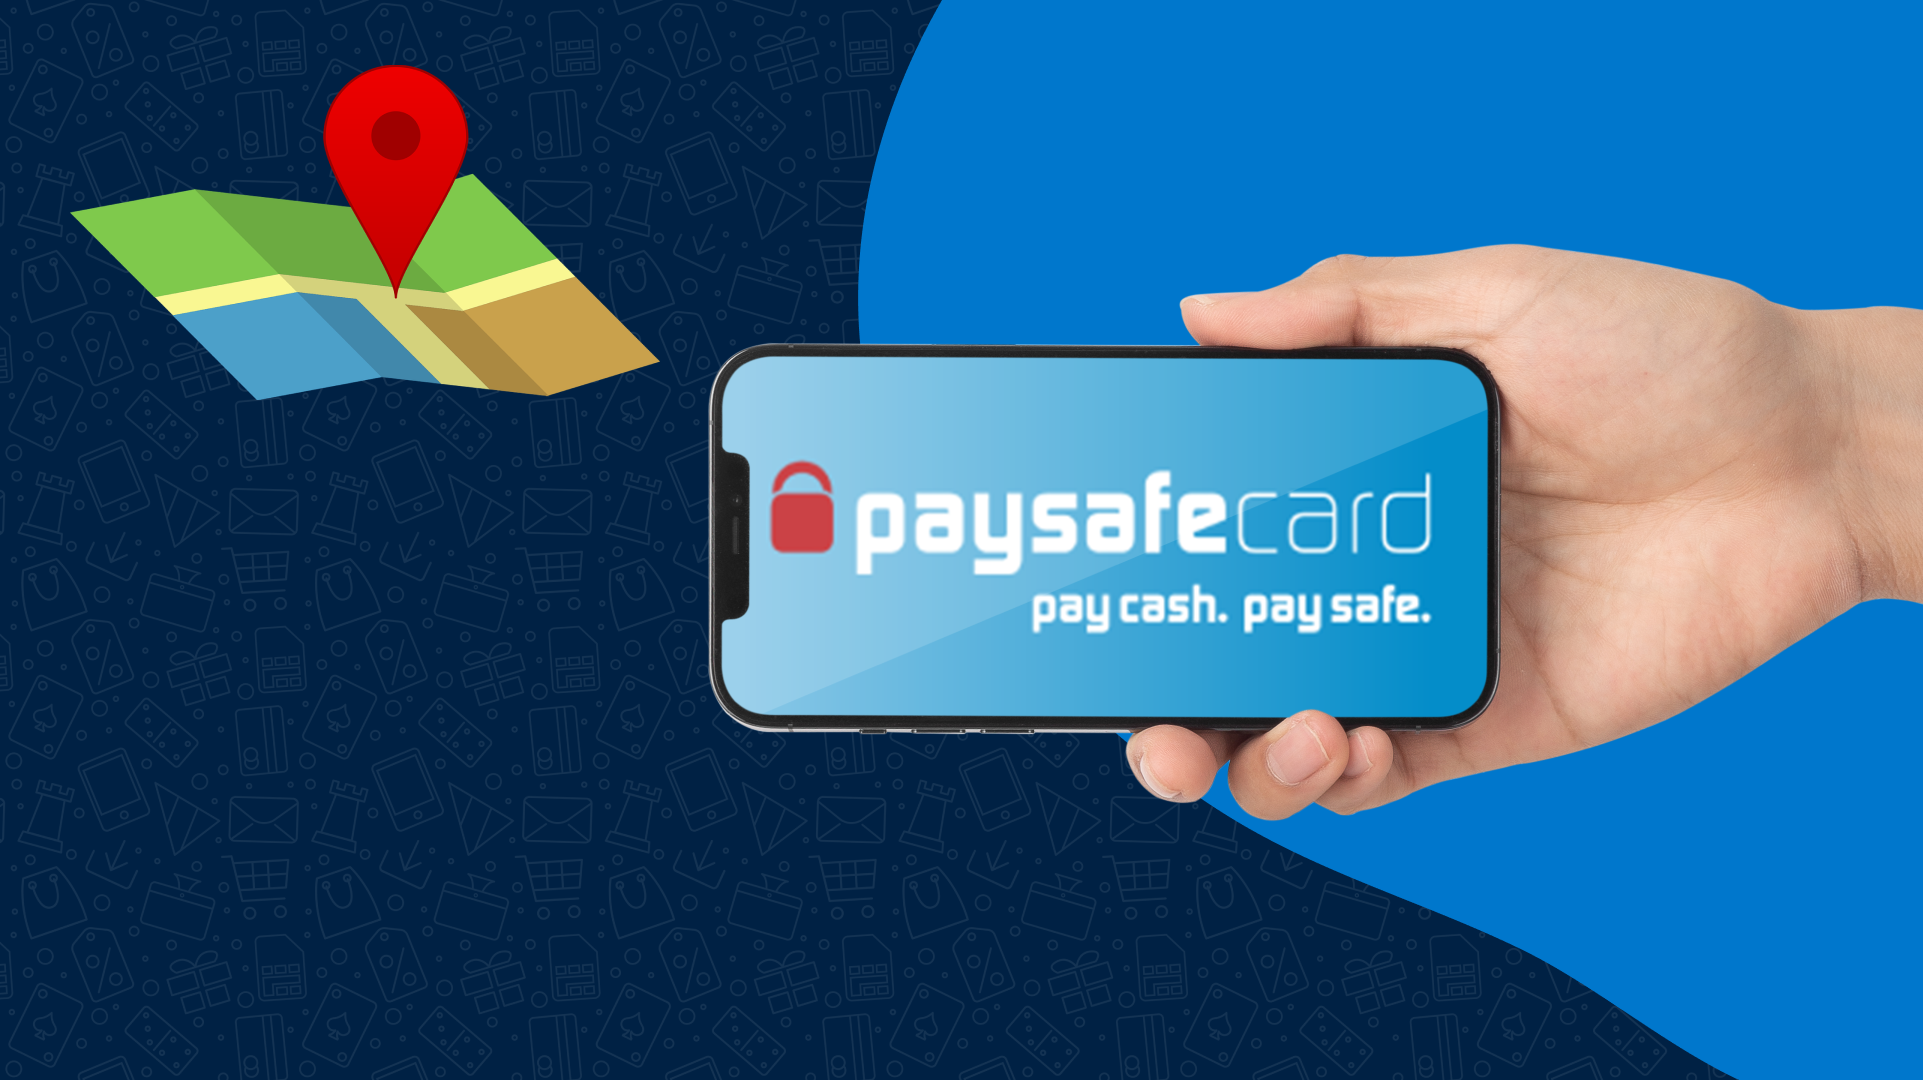 Paysafe Developer: About PayPal